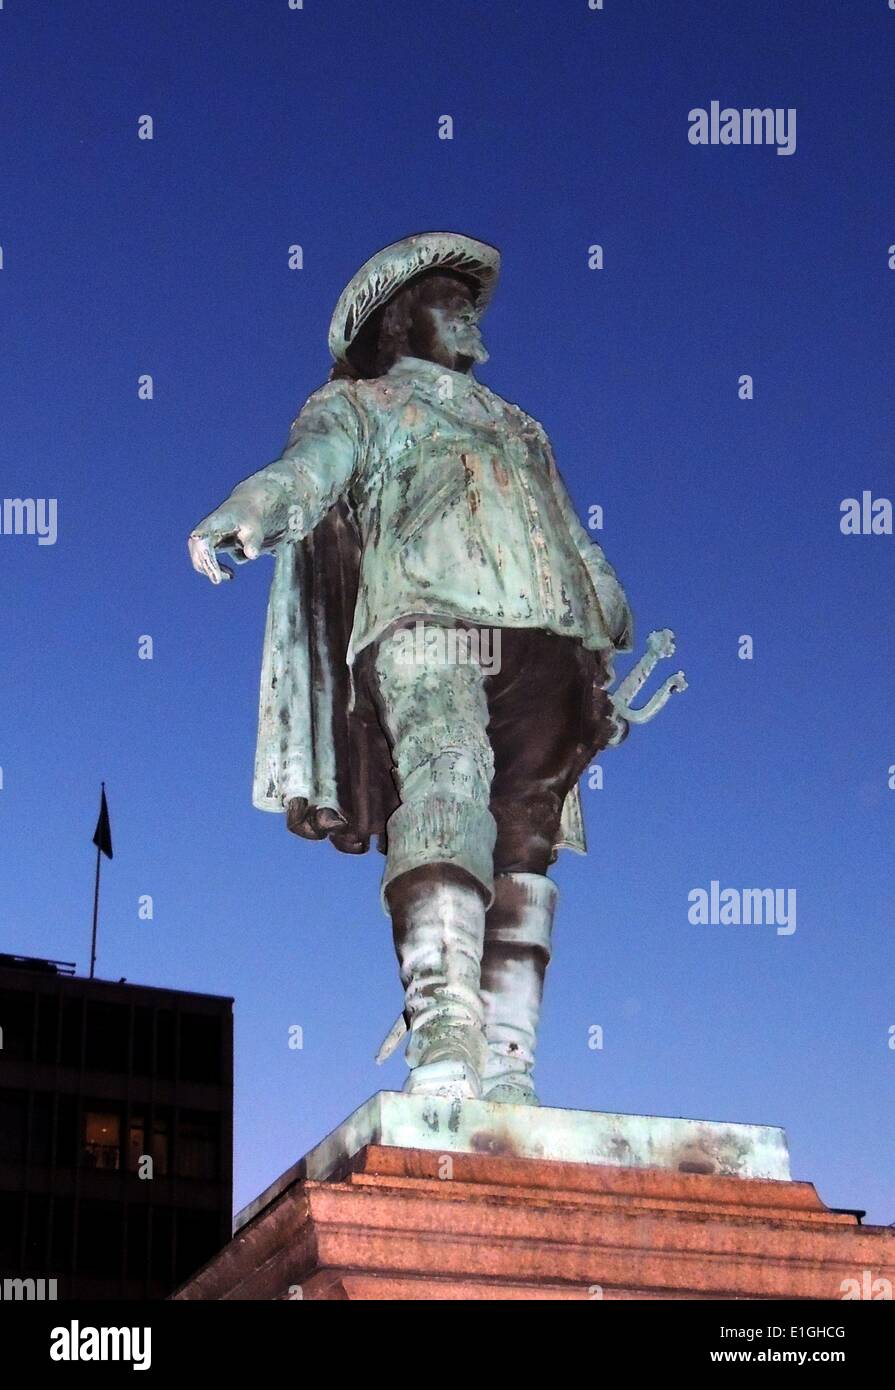 Christian IV (dänisch: Christian den Fjerde; 12. April 1577 - vom 28. Februar 1648), war König von Dänemark-norwegen hatte von 1588 bis zu seinem Tod. Er ist der am längsten regierende Monarch von Dänemark mit einer Regierungszeit von mehr als 59 Jahren. Statue in Oslo, Norwegen Stockfoto